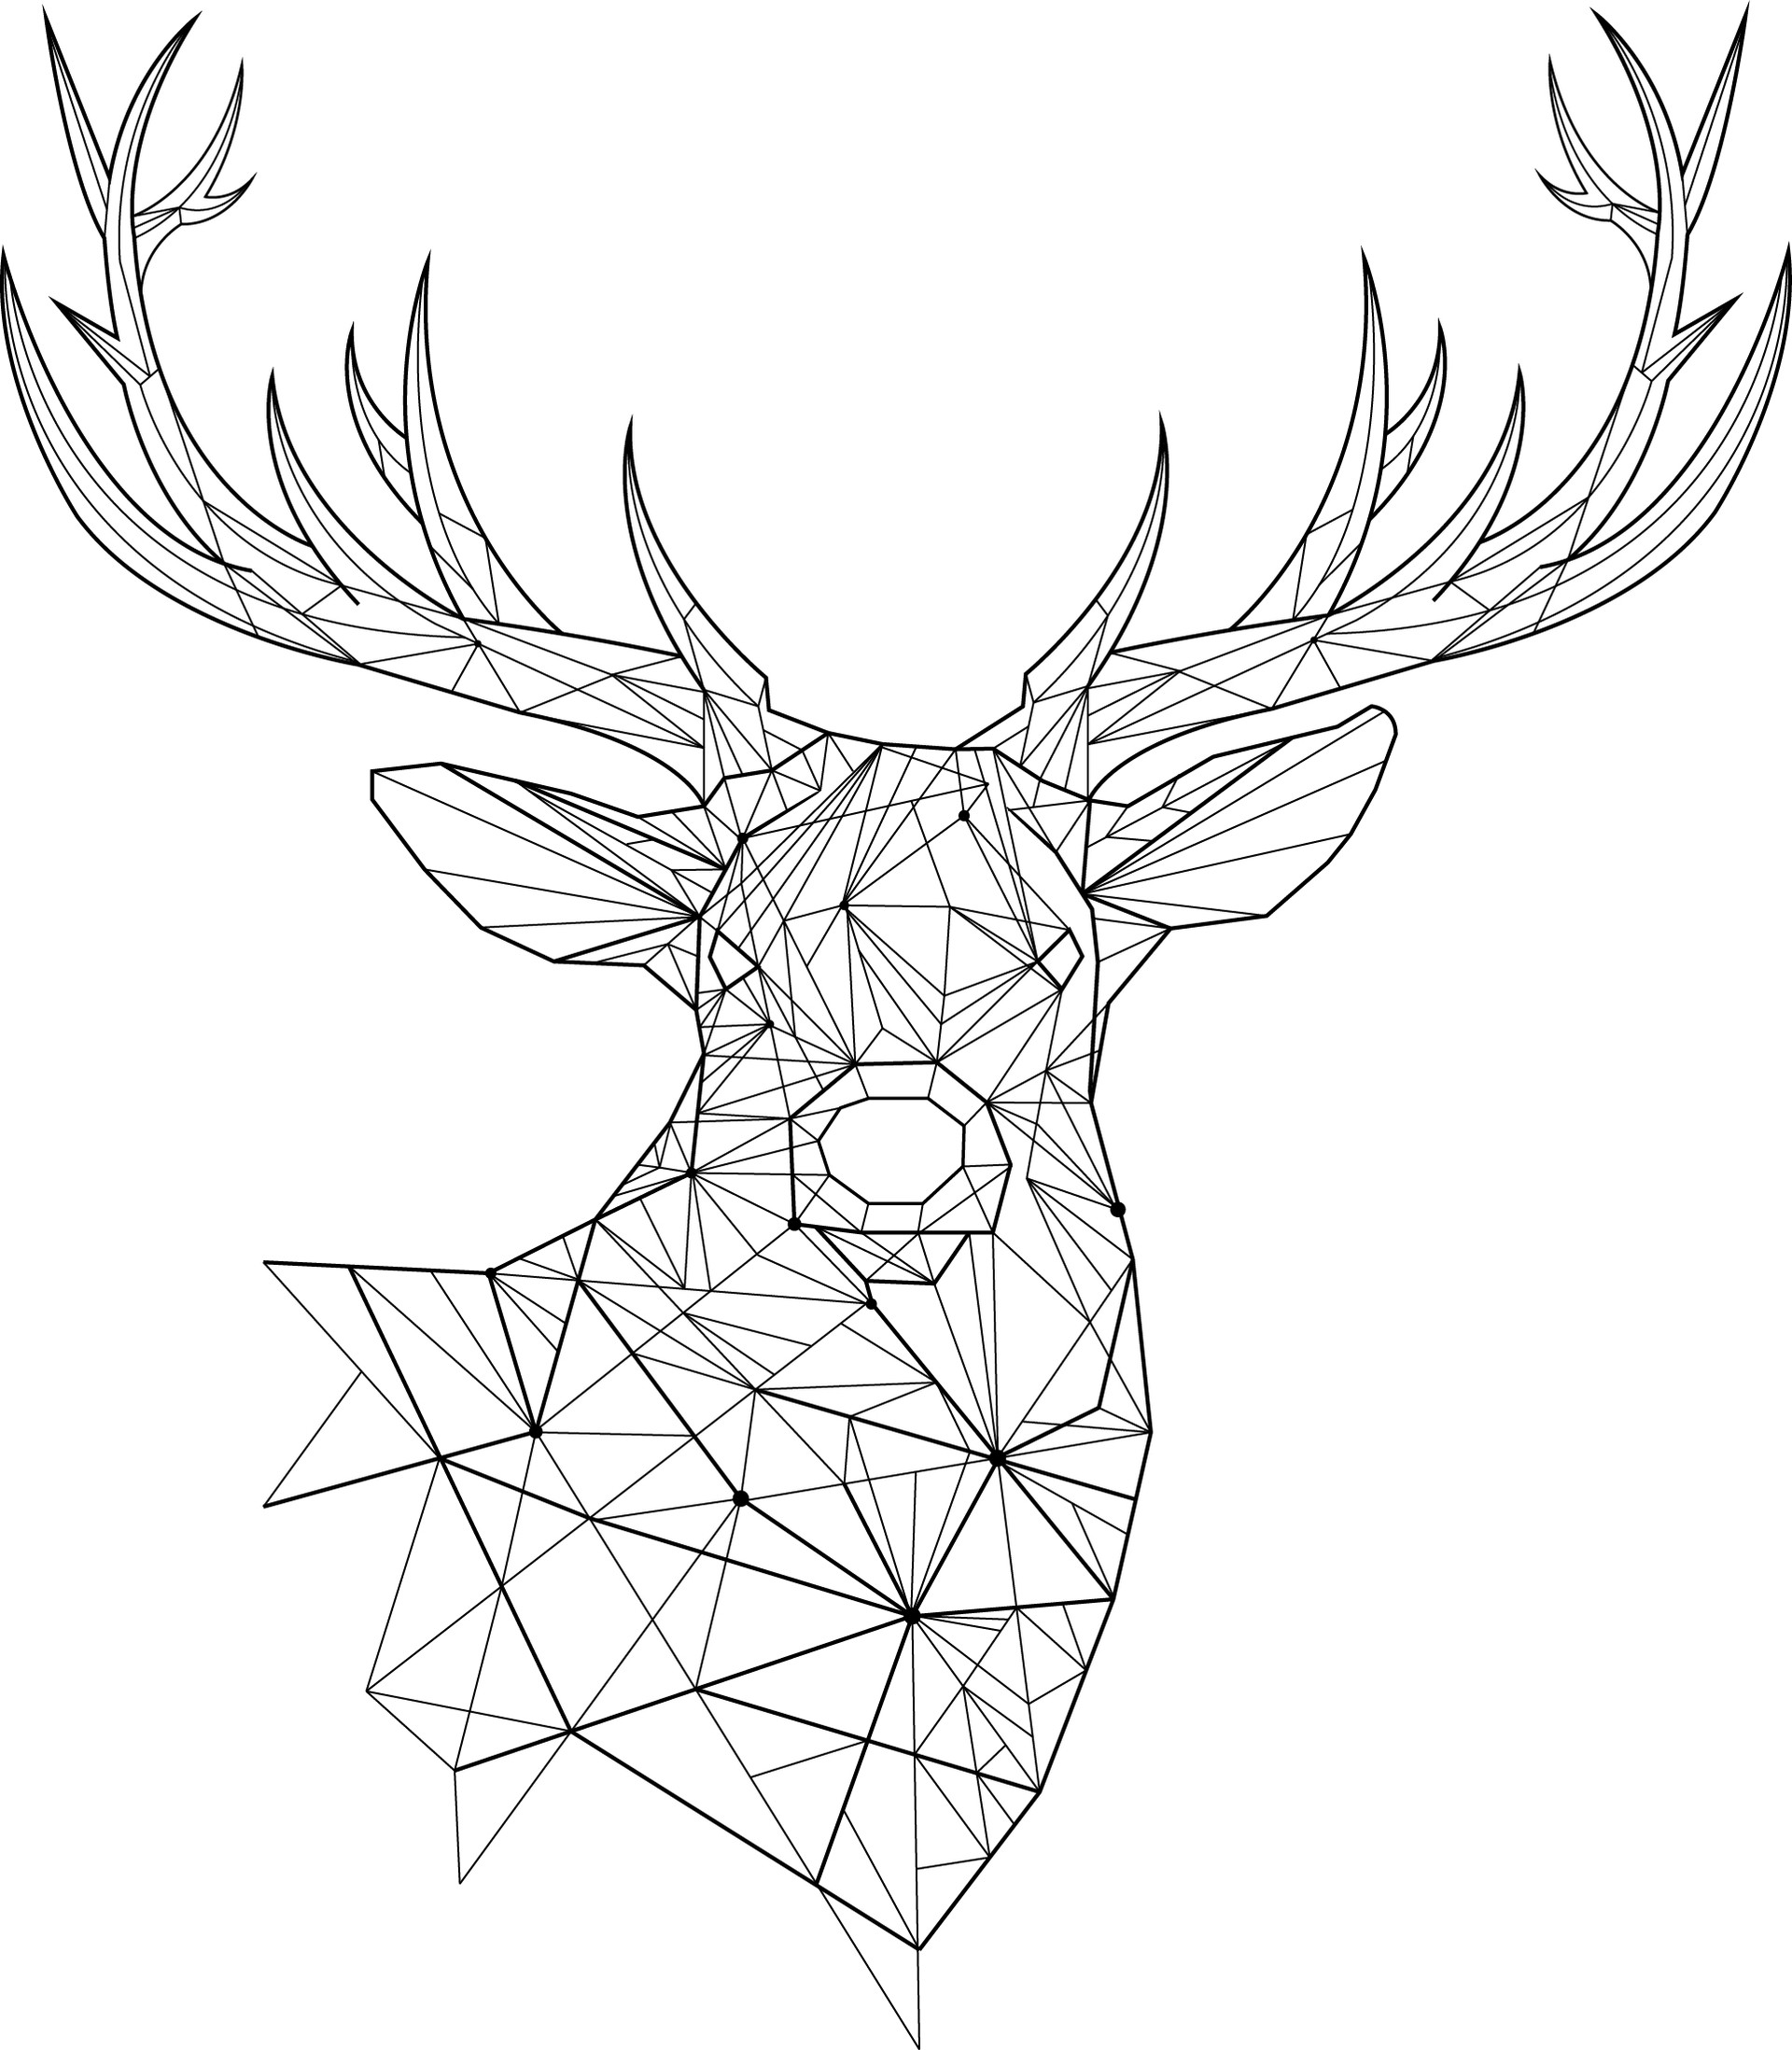 ArtStation - Technical deer vector design